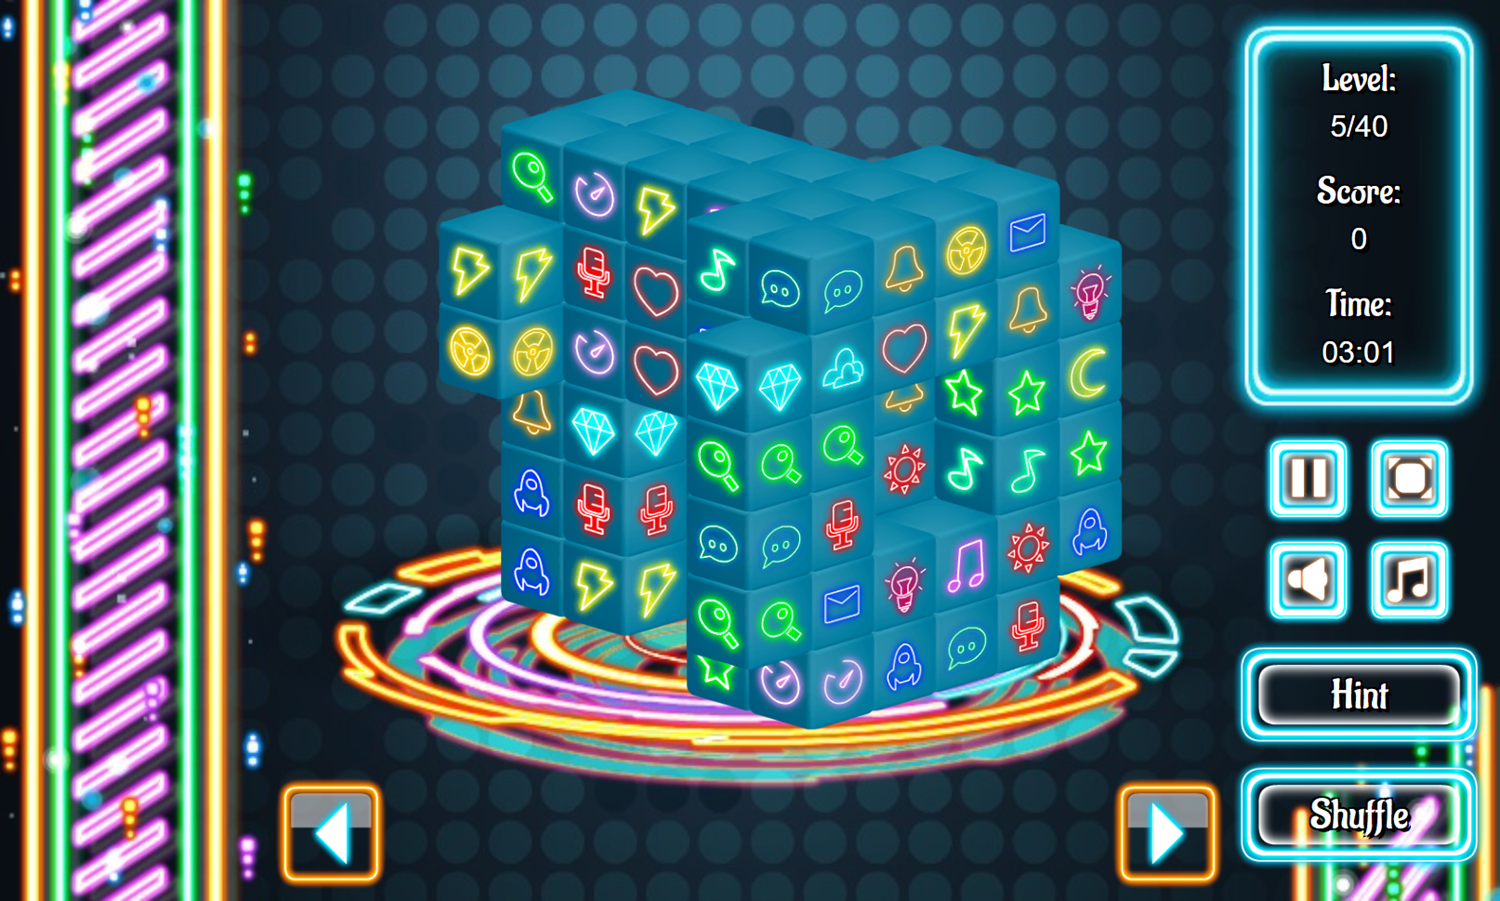 Neonjong 3D Game Level Progress Screenshot.